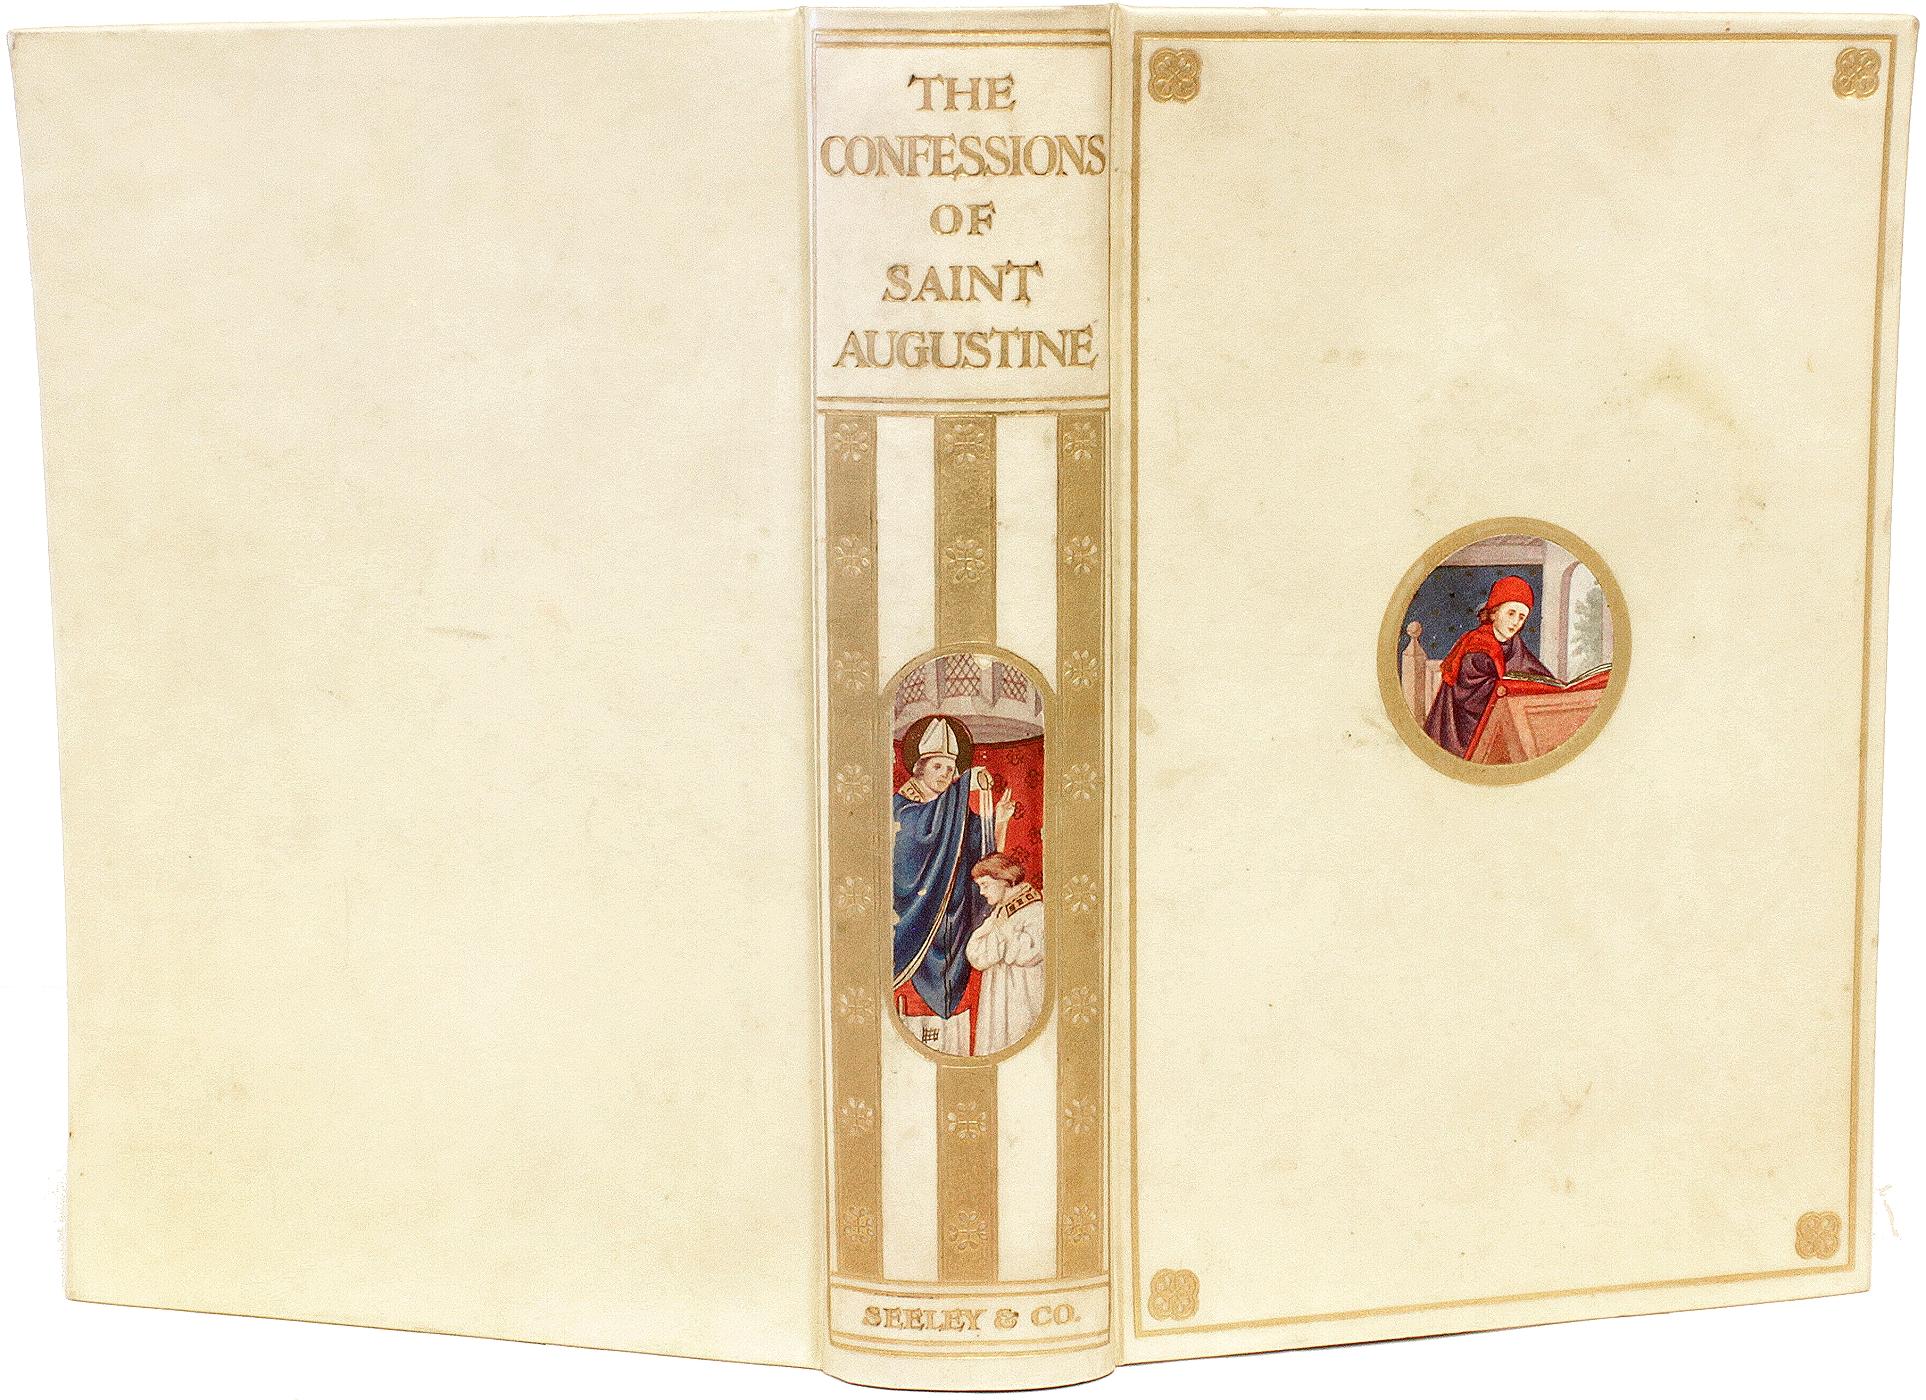 AUTHOR: Saint Augustine. 

TITLE: The Confessions of Saint Augustine.

PUBLISHER: London: Seeley & Co., Ltd., 1909.

DESCRIPTION: 1 vol., 7-7/8